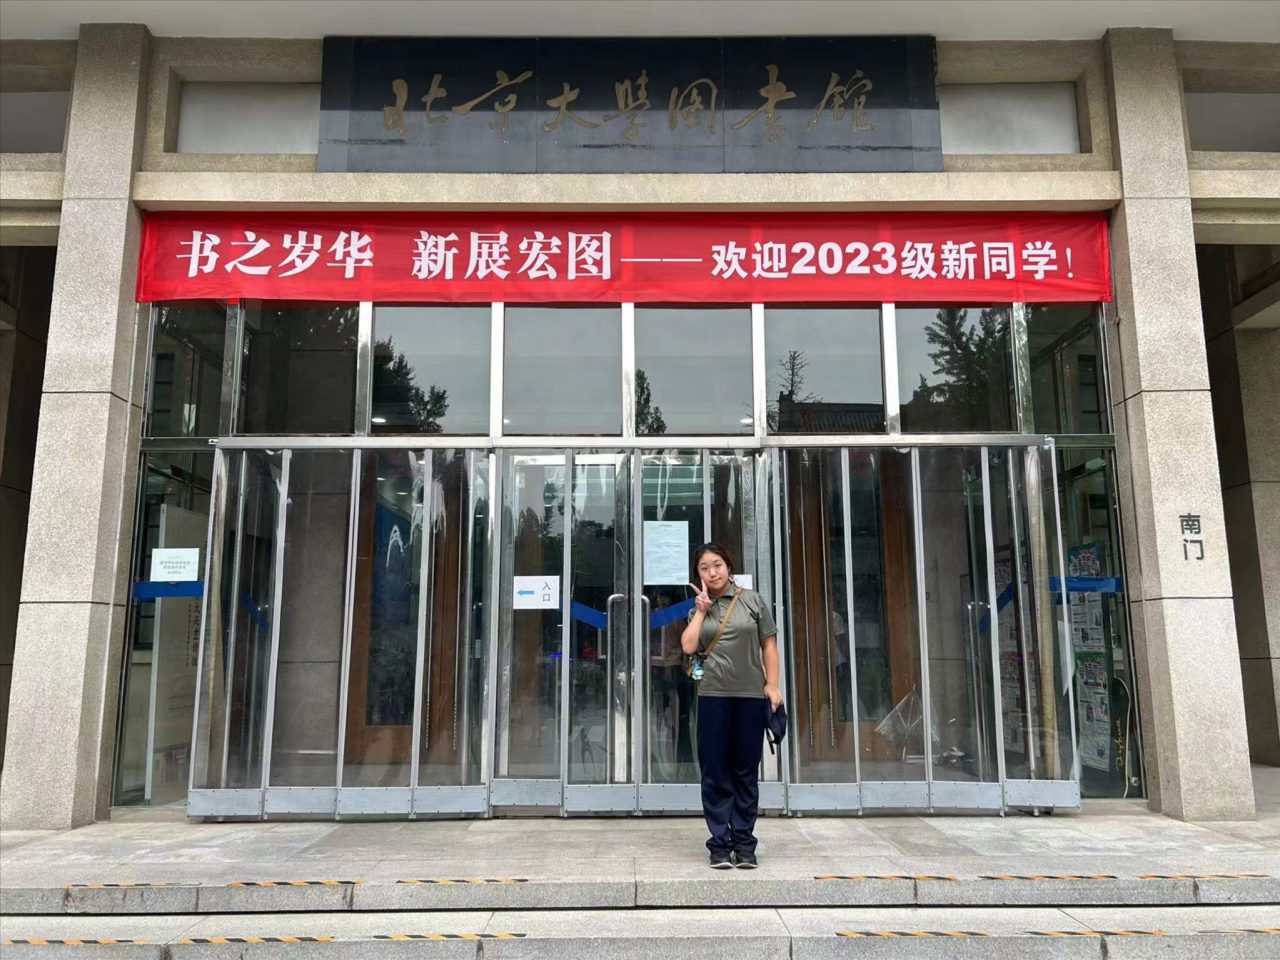 F.6 graduate receiving an offer from Peking University